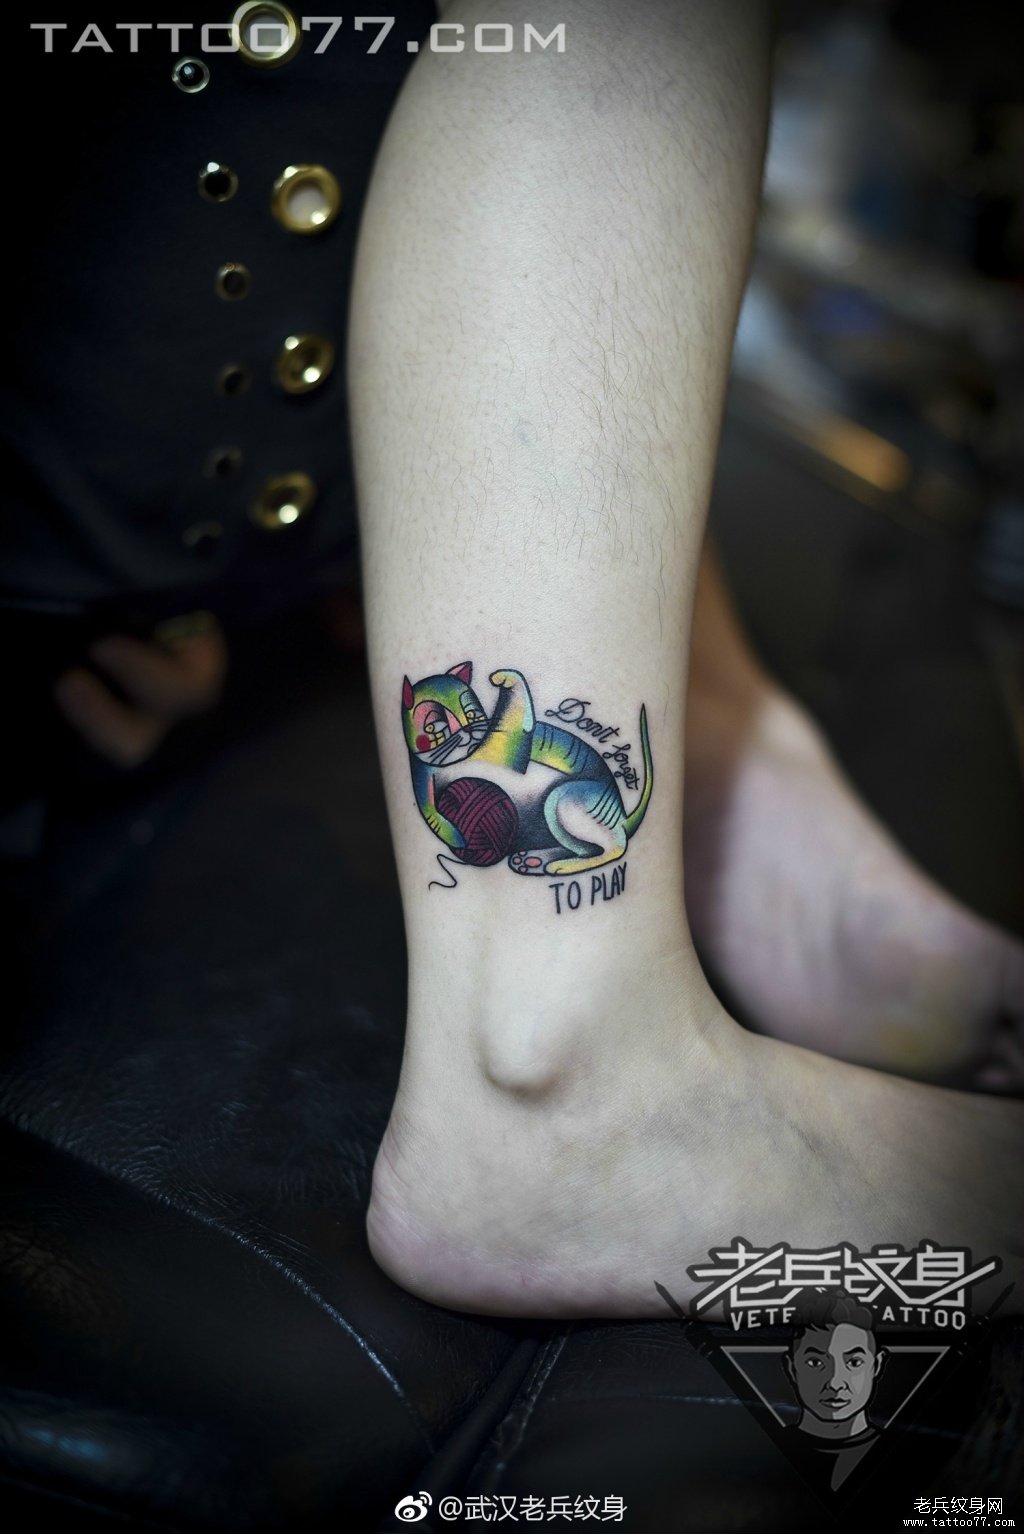 脚踝彩色小猫咪纹身图案作品